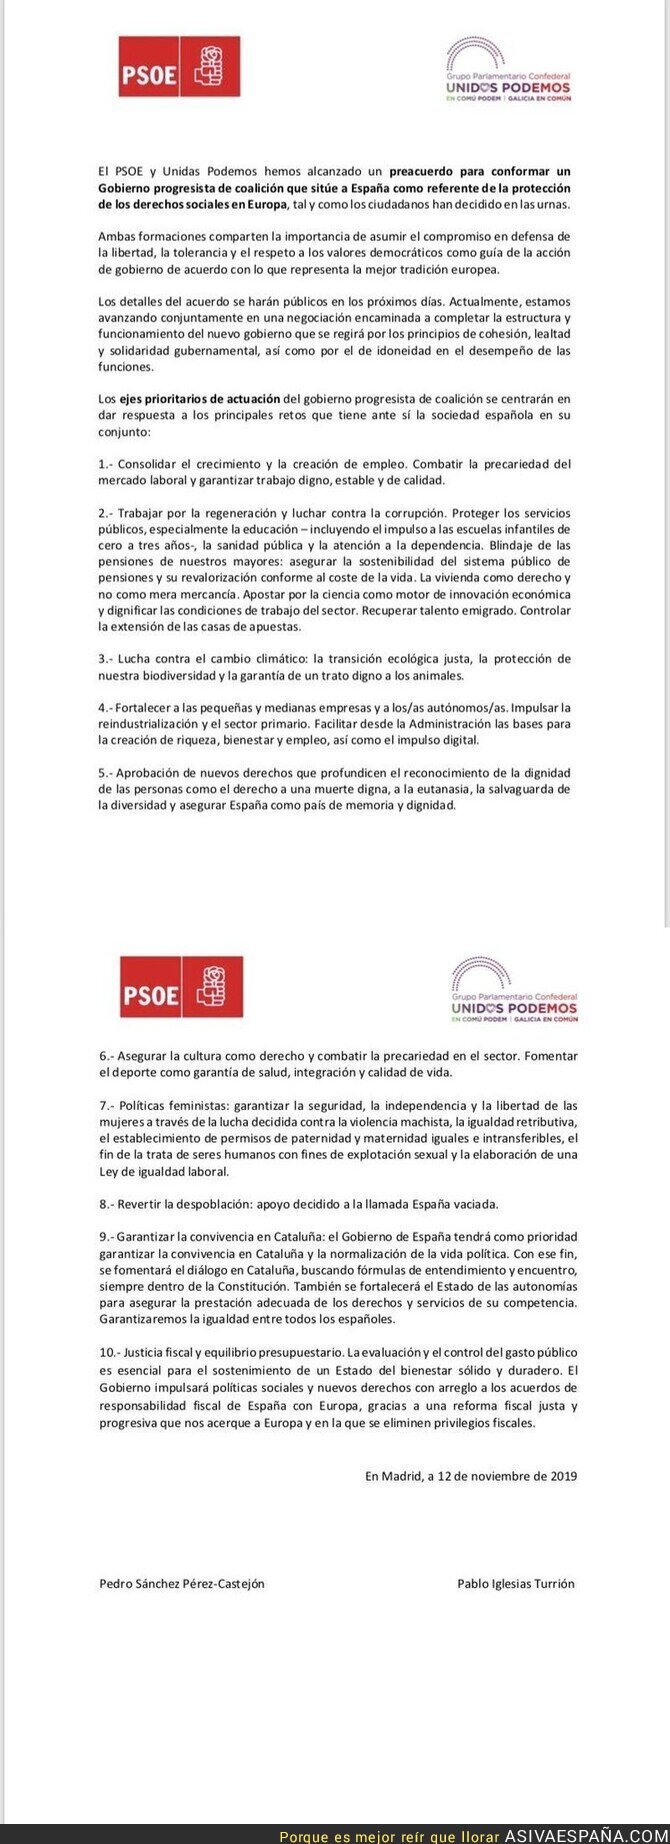 126905 - El texto con el que PSOE y Unidas Podemos llegan a un acuerdo